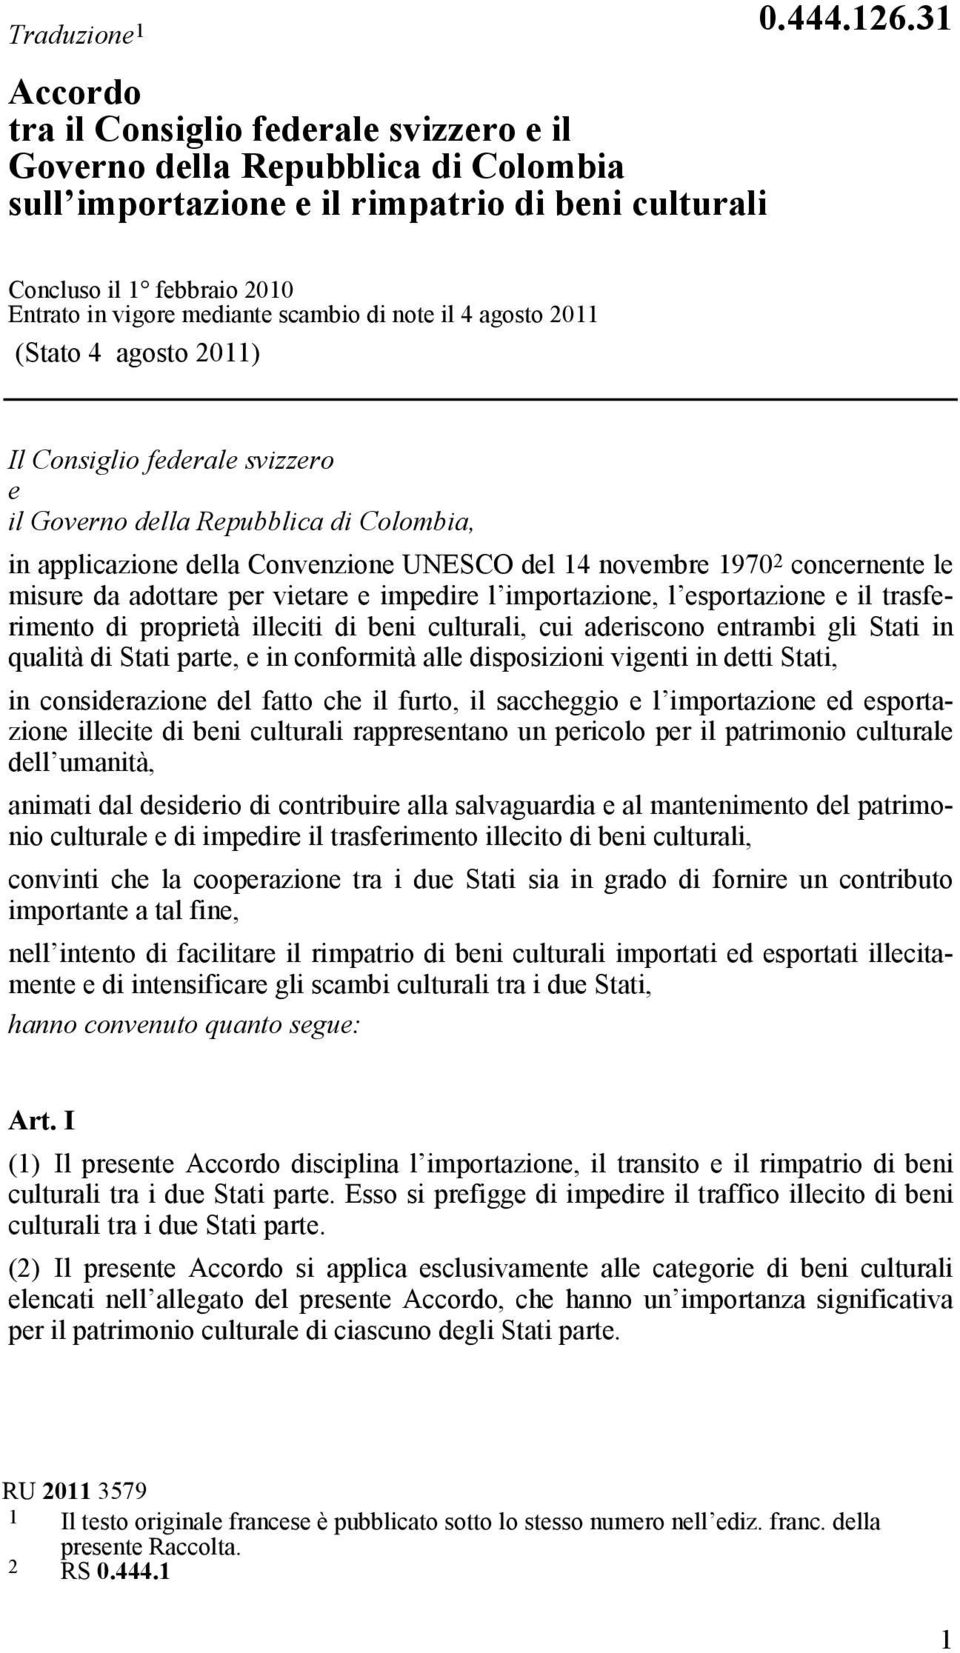 applicazione della Convenzione UNESCO del 14 novembre 1970 2 concernente le misure da adottare per vietare e impedire l importazione, l esportazione e il trasferimento di proprietà illeciti di beni